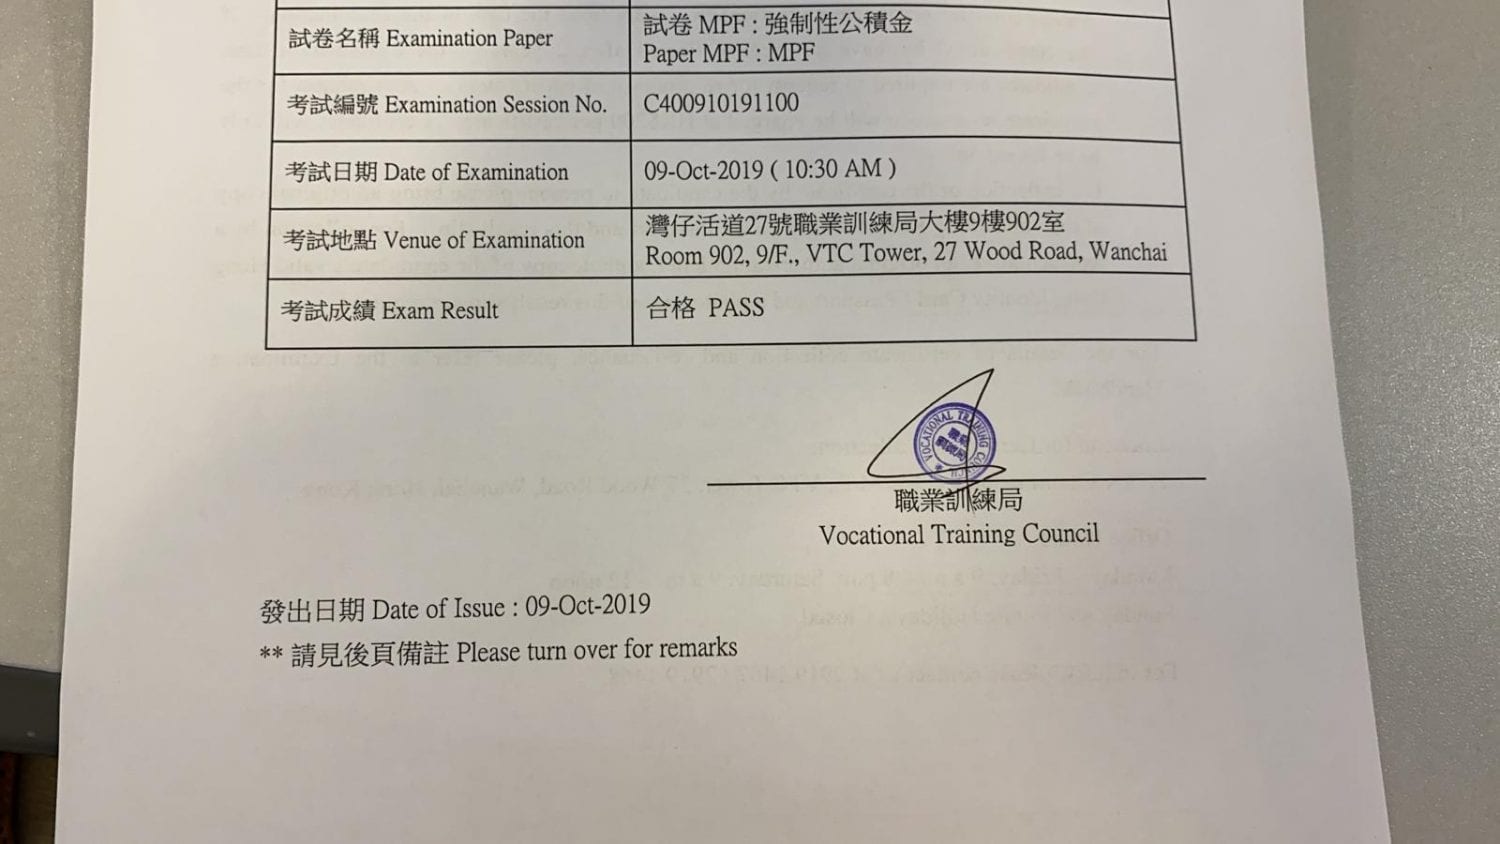 TSC 9/10/2019 MPFE 強積金中介人資格考試 Pass